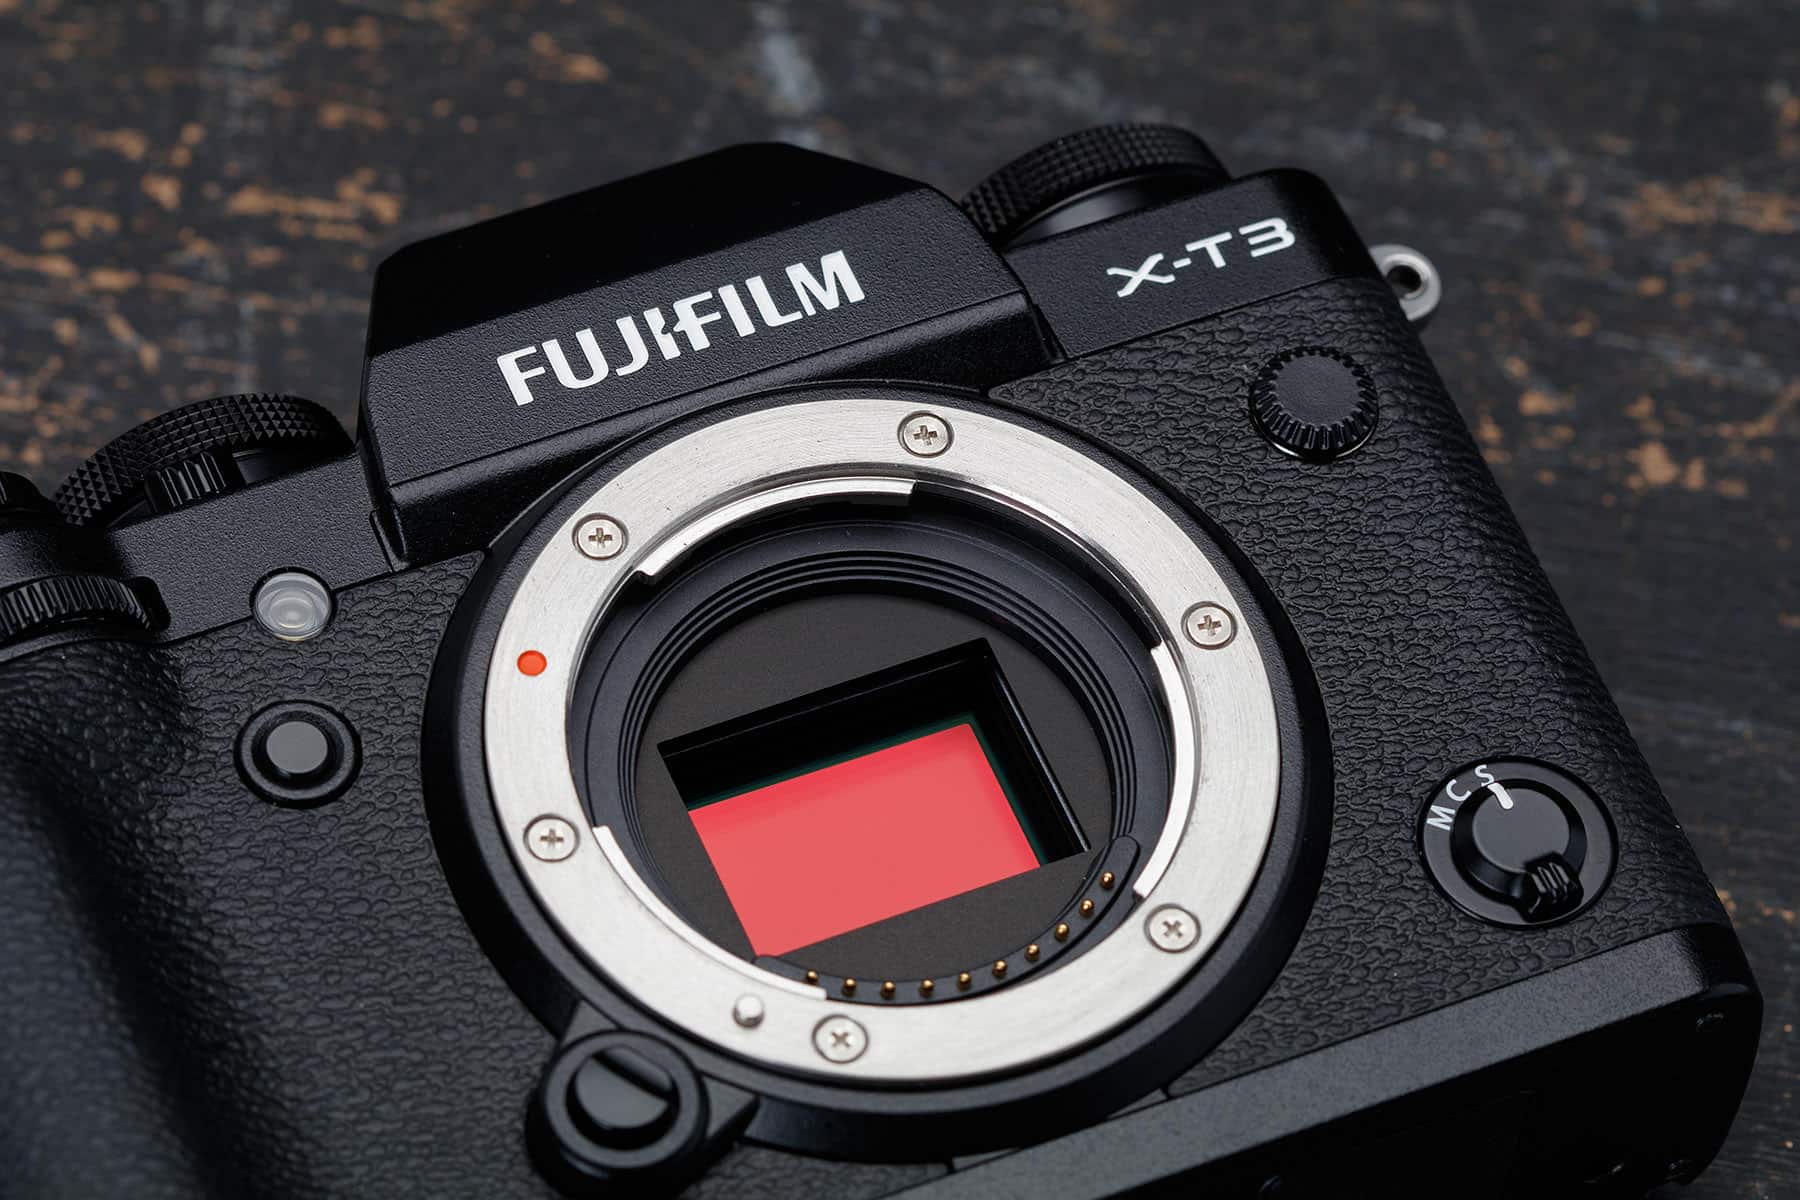 Máy ảnh Fujifilm X-T3 với ống kính XF 18-55mm (Black)